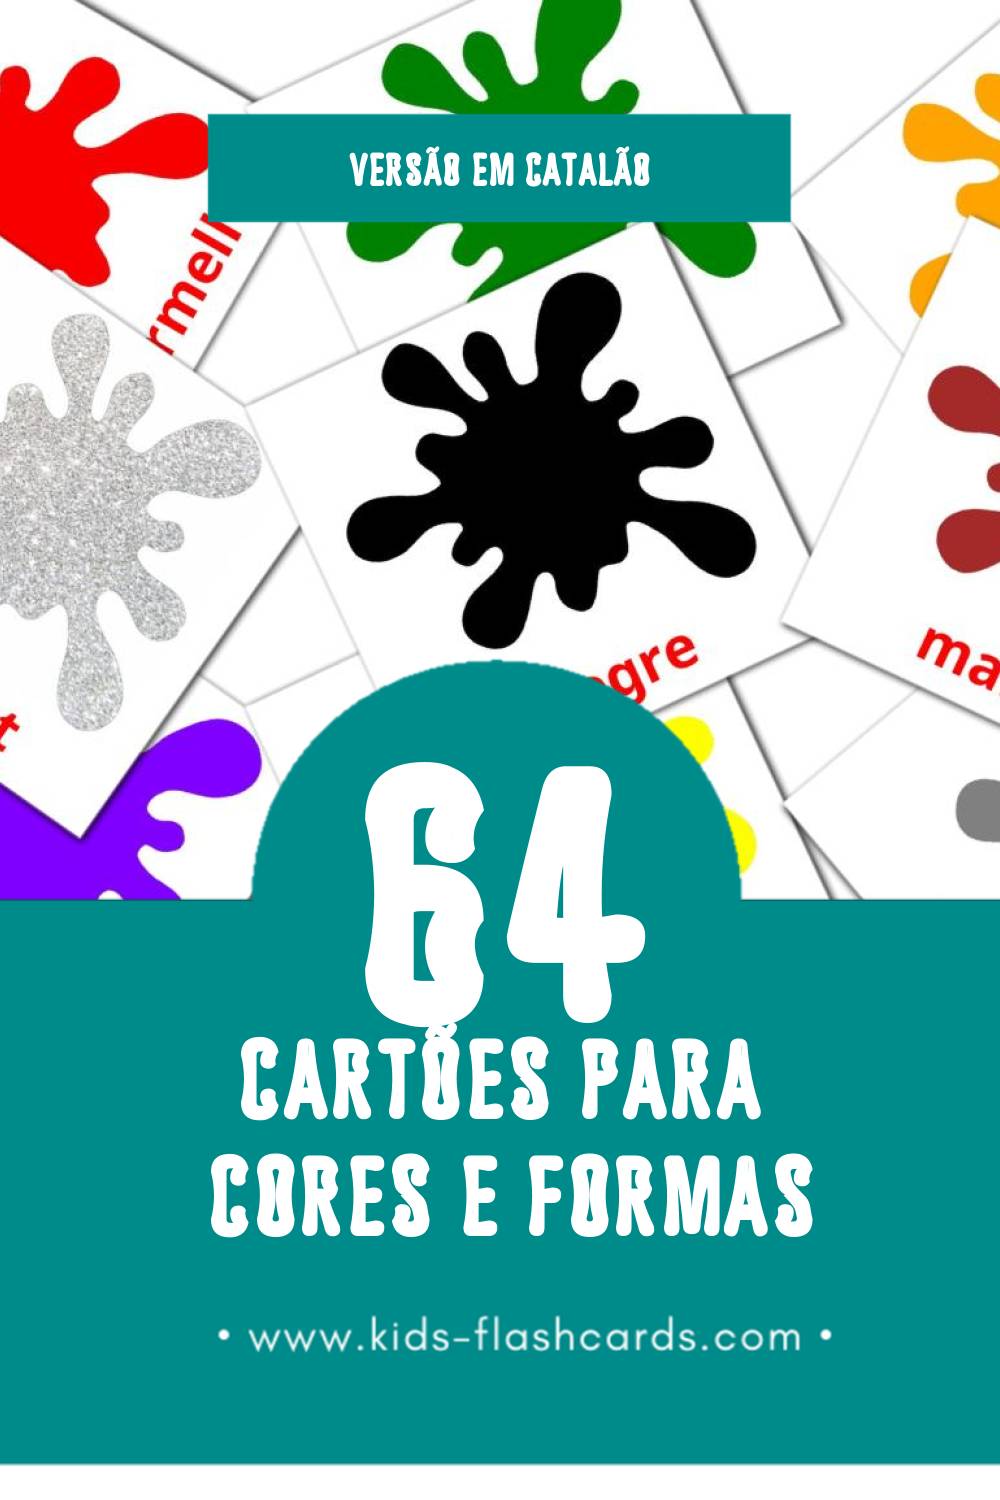 Flashcards de Colors Visuais para Toddlers (64 cartões em Catalão)